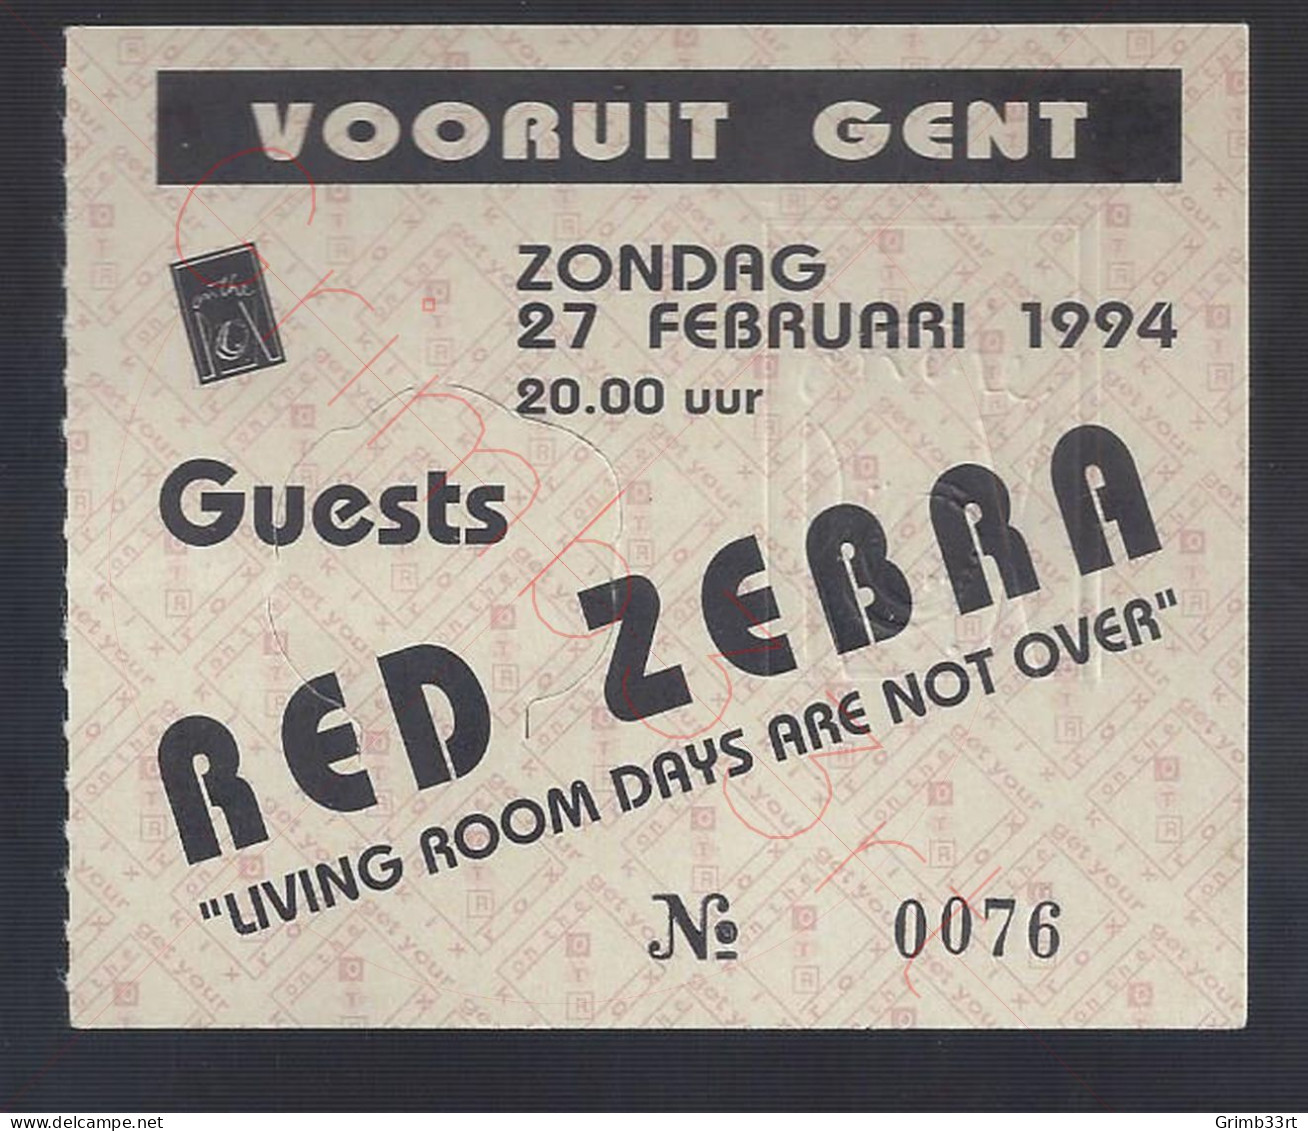 Red Zebra - 27 Februari 1994 - Vooruit Gent (BE) - Concert Ticket - Concert Tickets